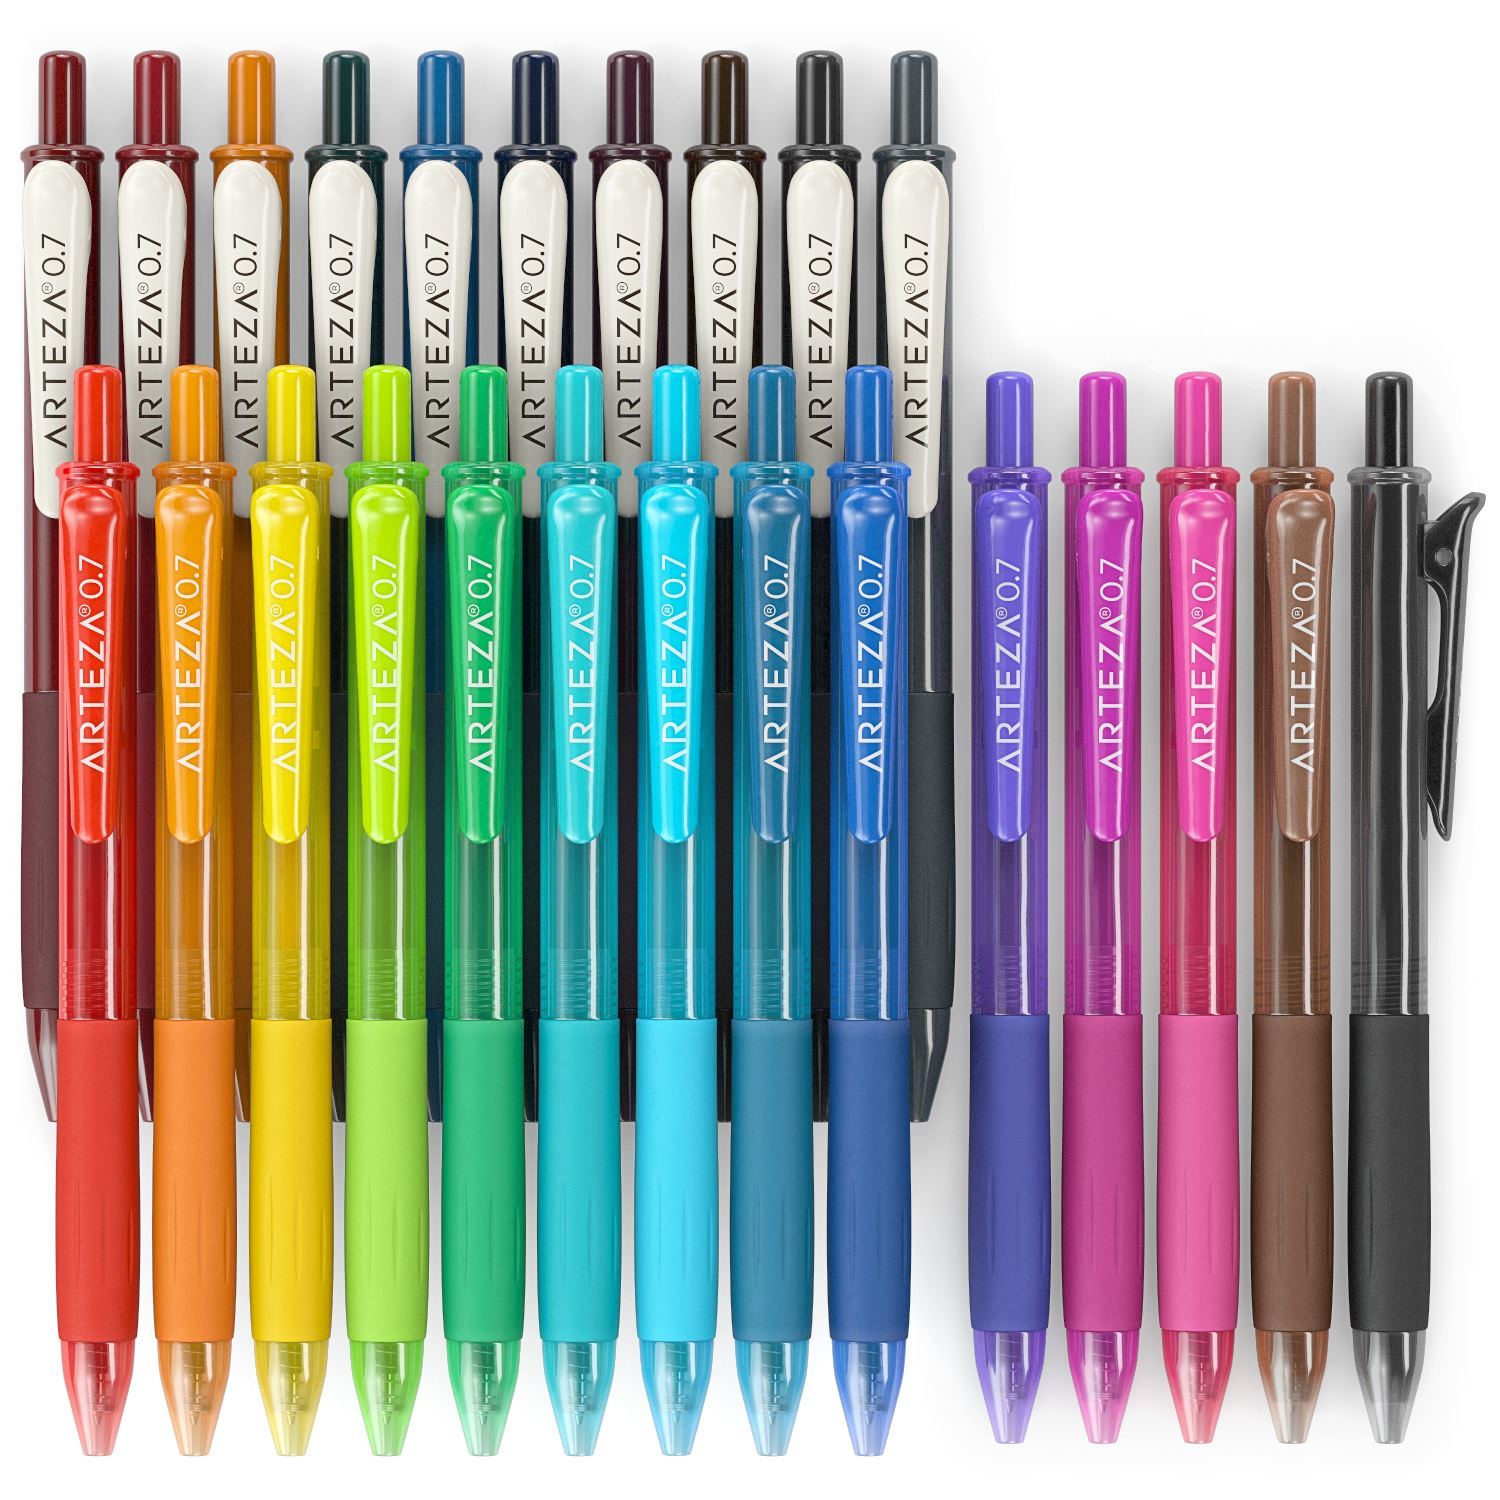 https://arteza.com/cdn/shop/products/retractable-gel-ink-pens-vintage-bright-colors-set-of-24_Th42IODJ.jpg?v=1668718029&width=1946